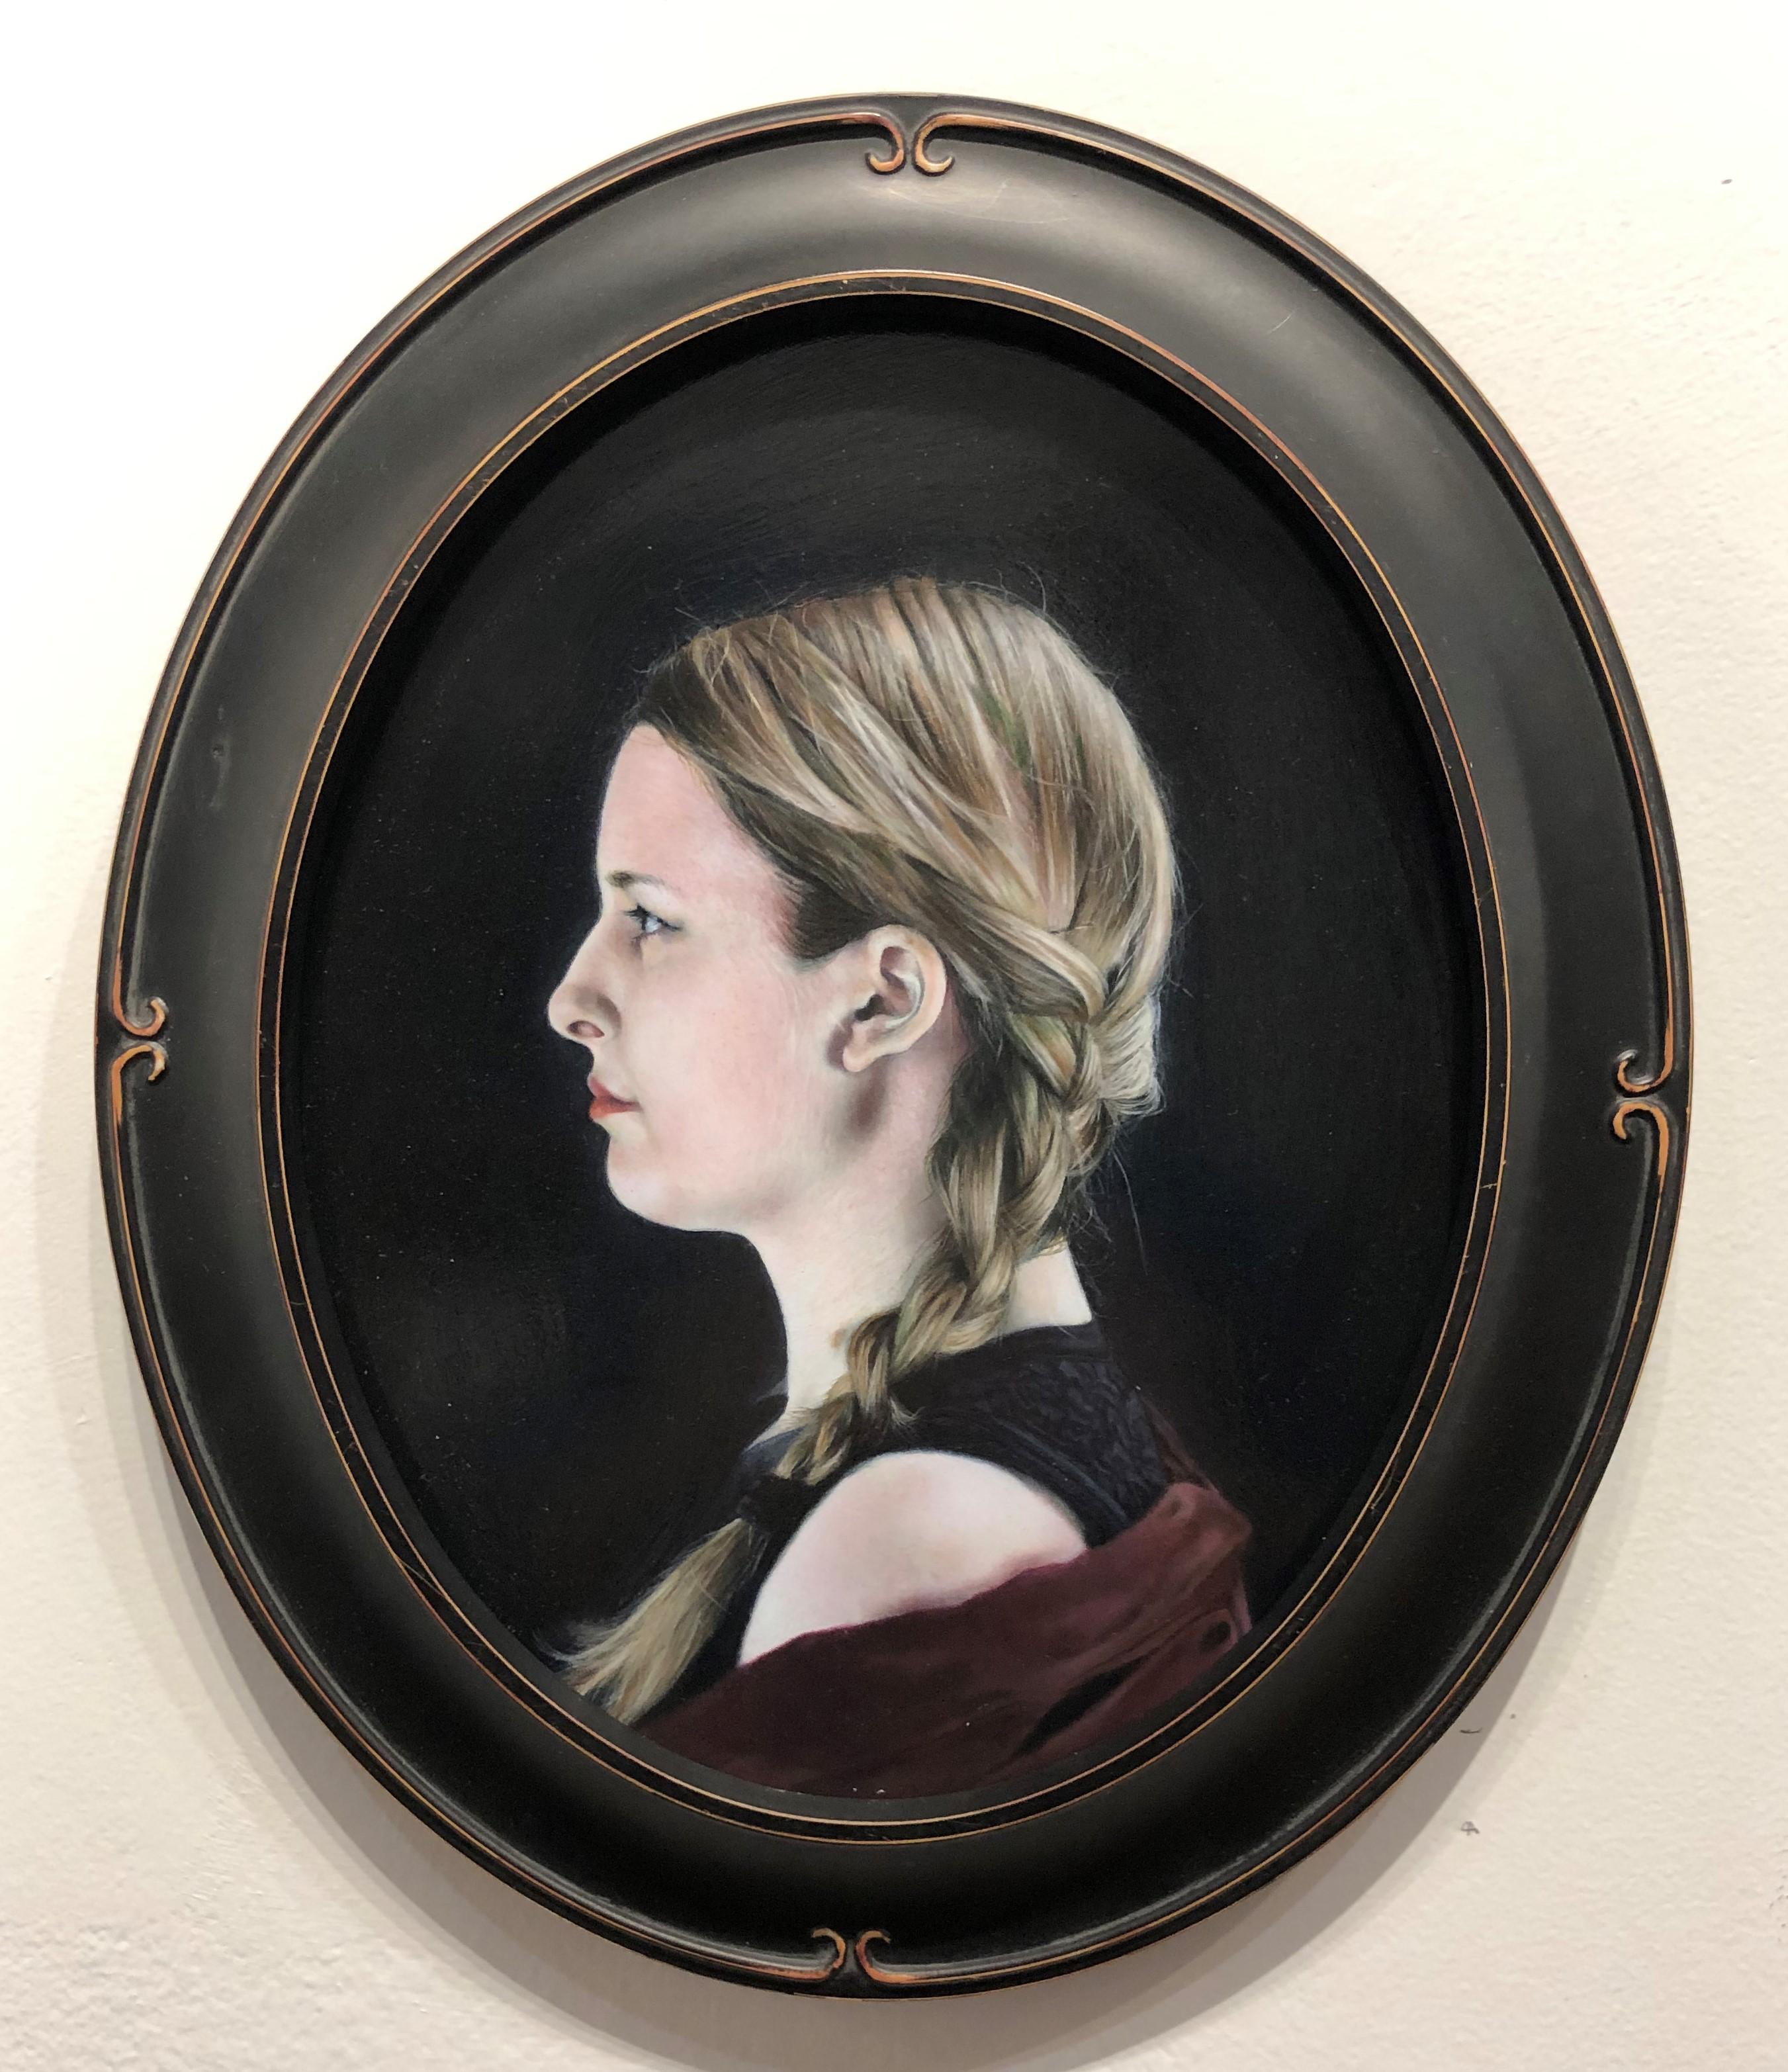 Joanne in Profil – Fotorealistisches Ölgemälde auf ovalem Tafel mit Frau im Profil – Painting von Matthew Cook